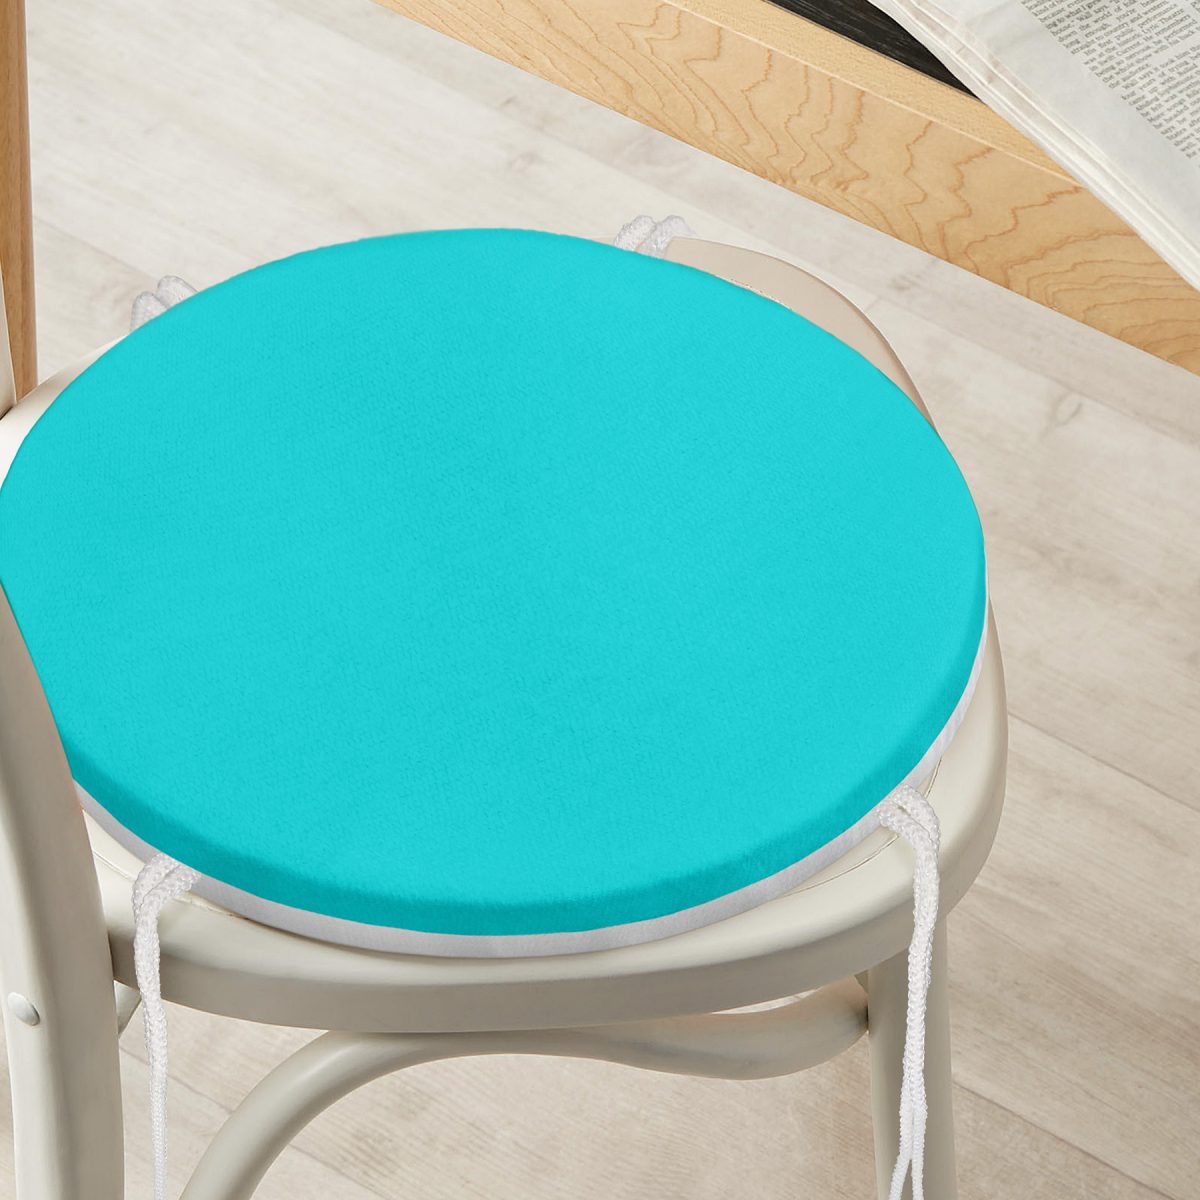 Turkuaz Renkli Dijital Baskılı Yuvarlak Fermuarlı Sandalye Minderi Realhomes